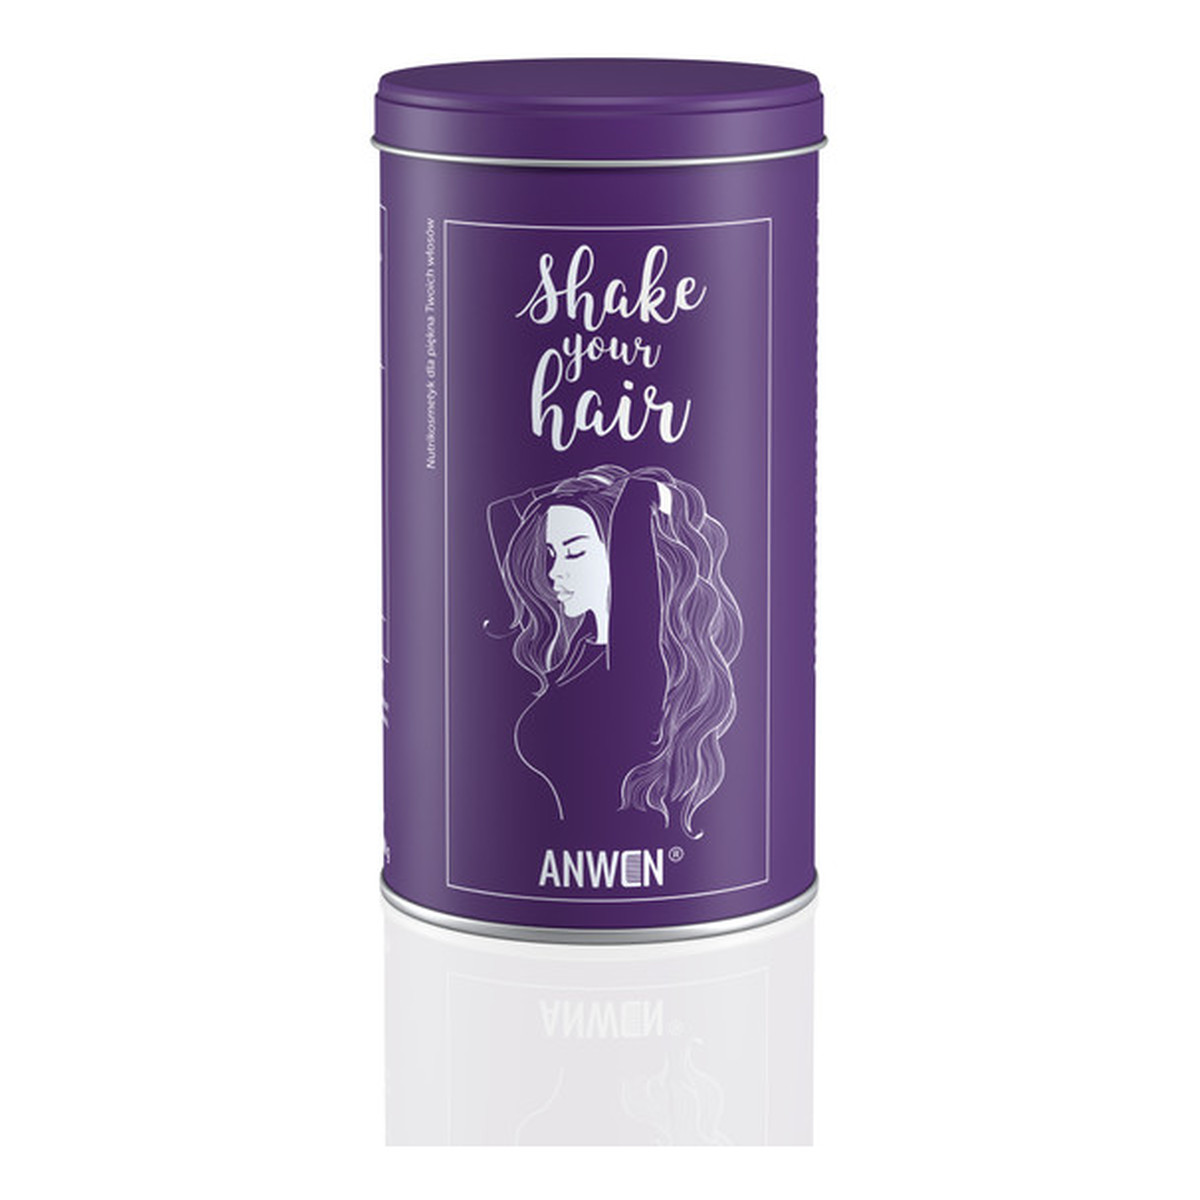 Anwen Shake your hair nutrikosmetyk suplement diety 360g